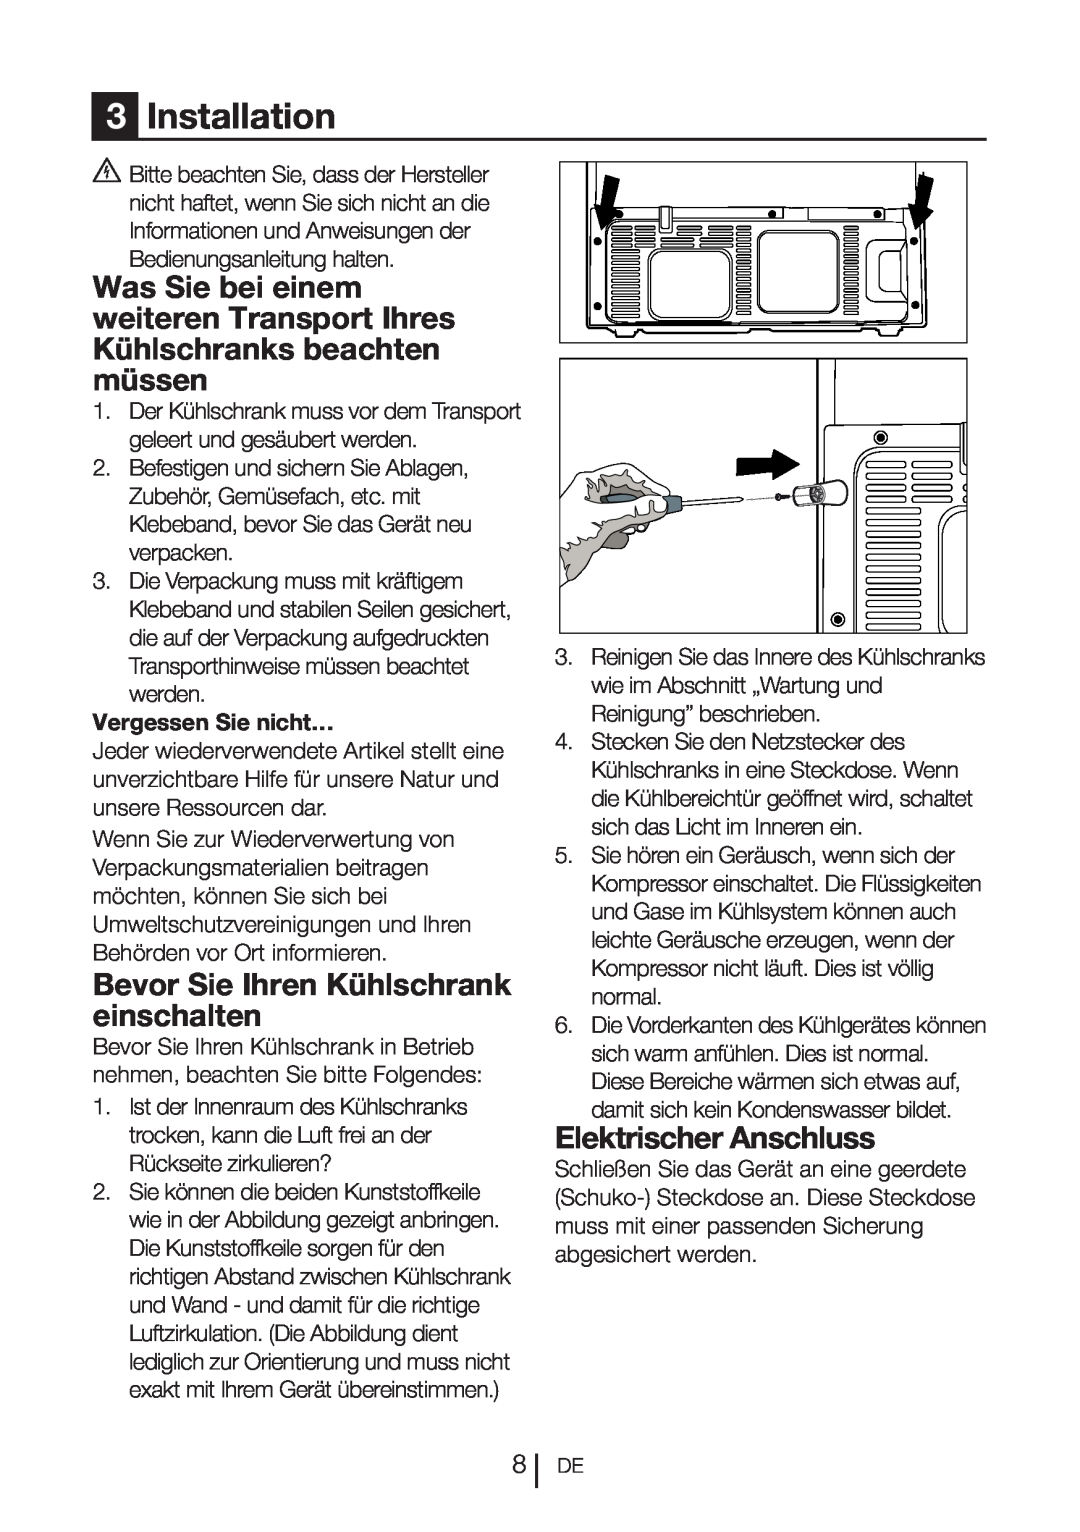 Blomberg DND 1977 Bevor Sie Ihren Kühlschrank einschalten, Elektrischer Anschluss, 3Installation, Vergessen Sie nicht… 